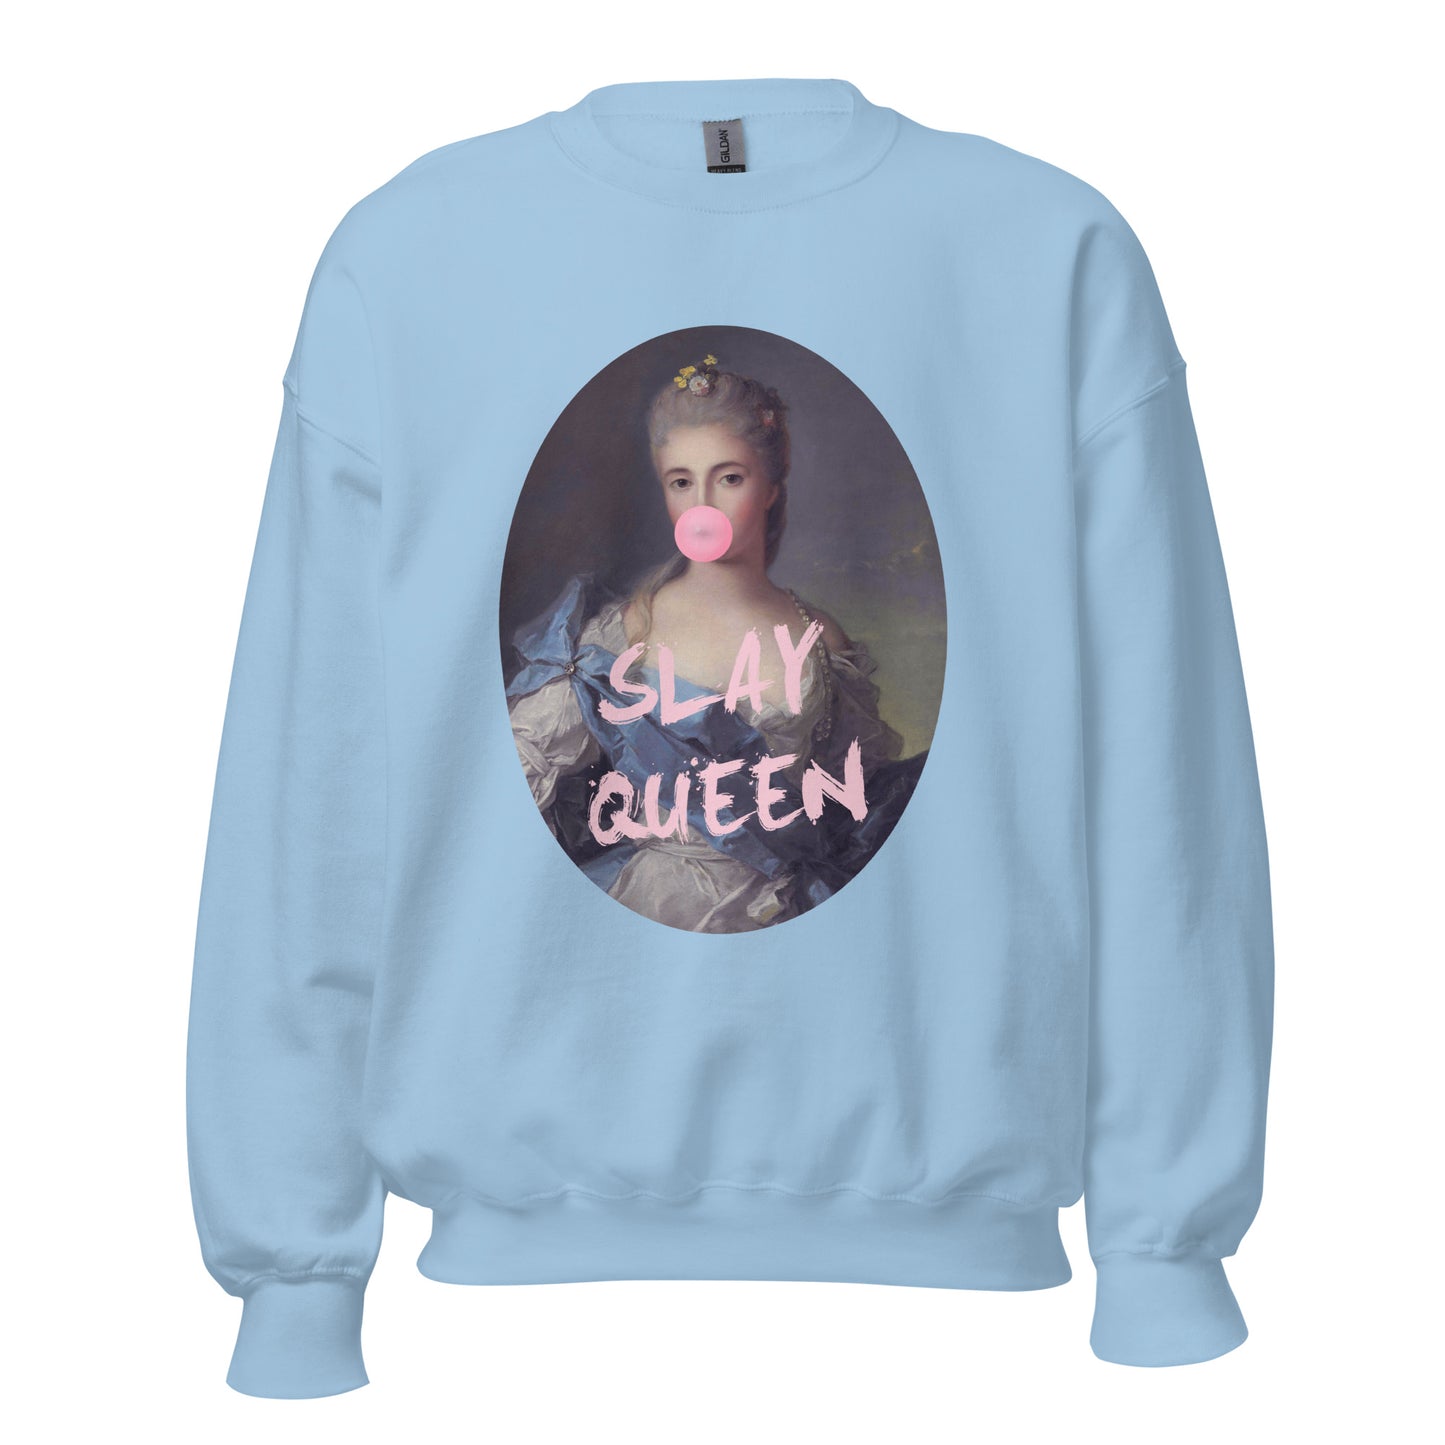 Slay Queen Unisex Sweatshirt